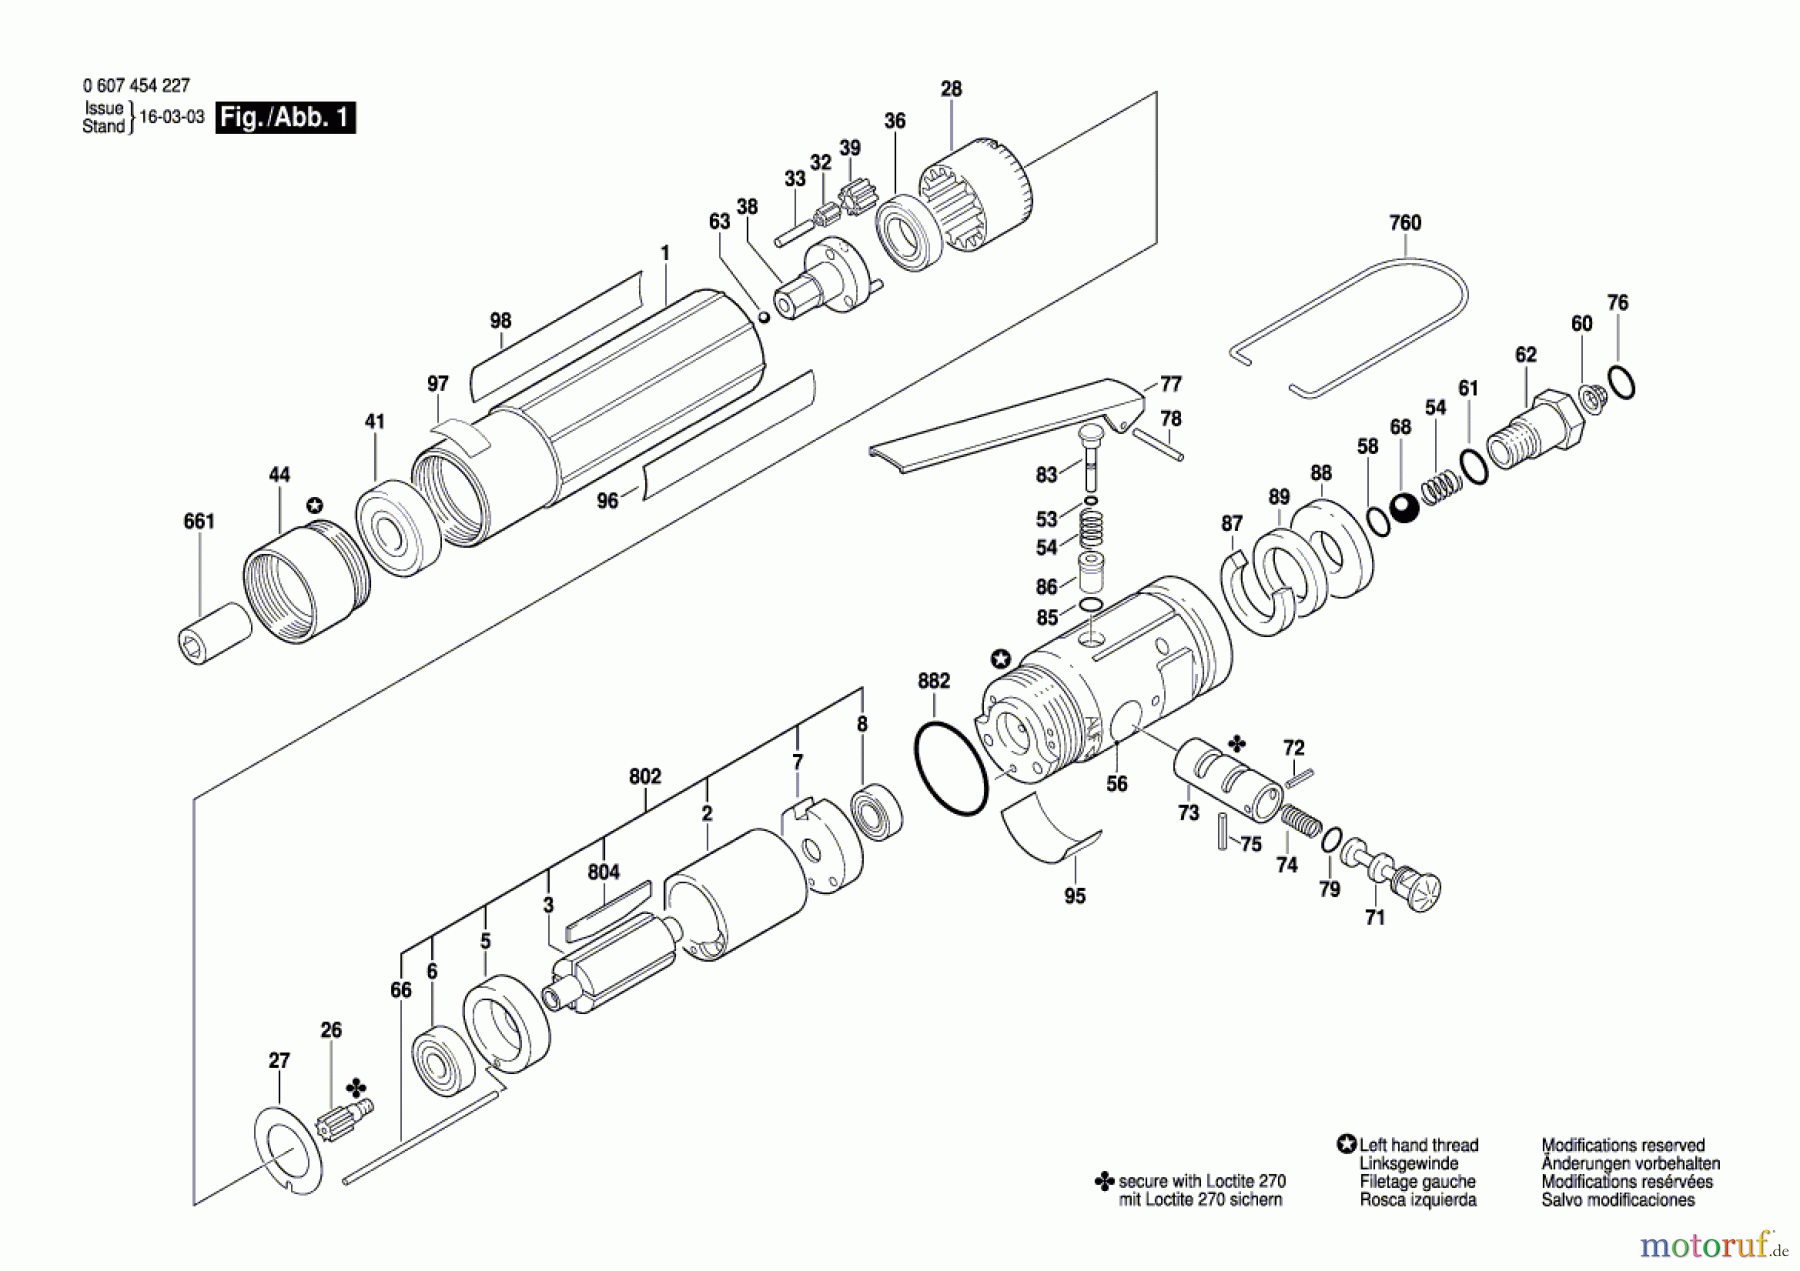  Bosch Werkzeug Pw-Schrauber-Ind 120 WATT-SERIE Seite 1